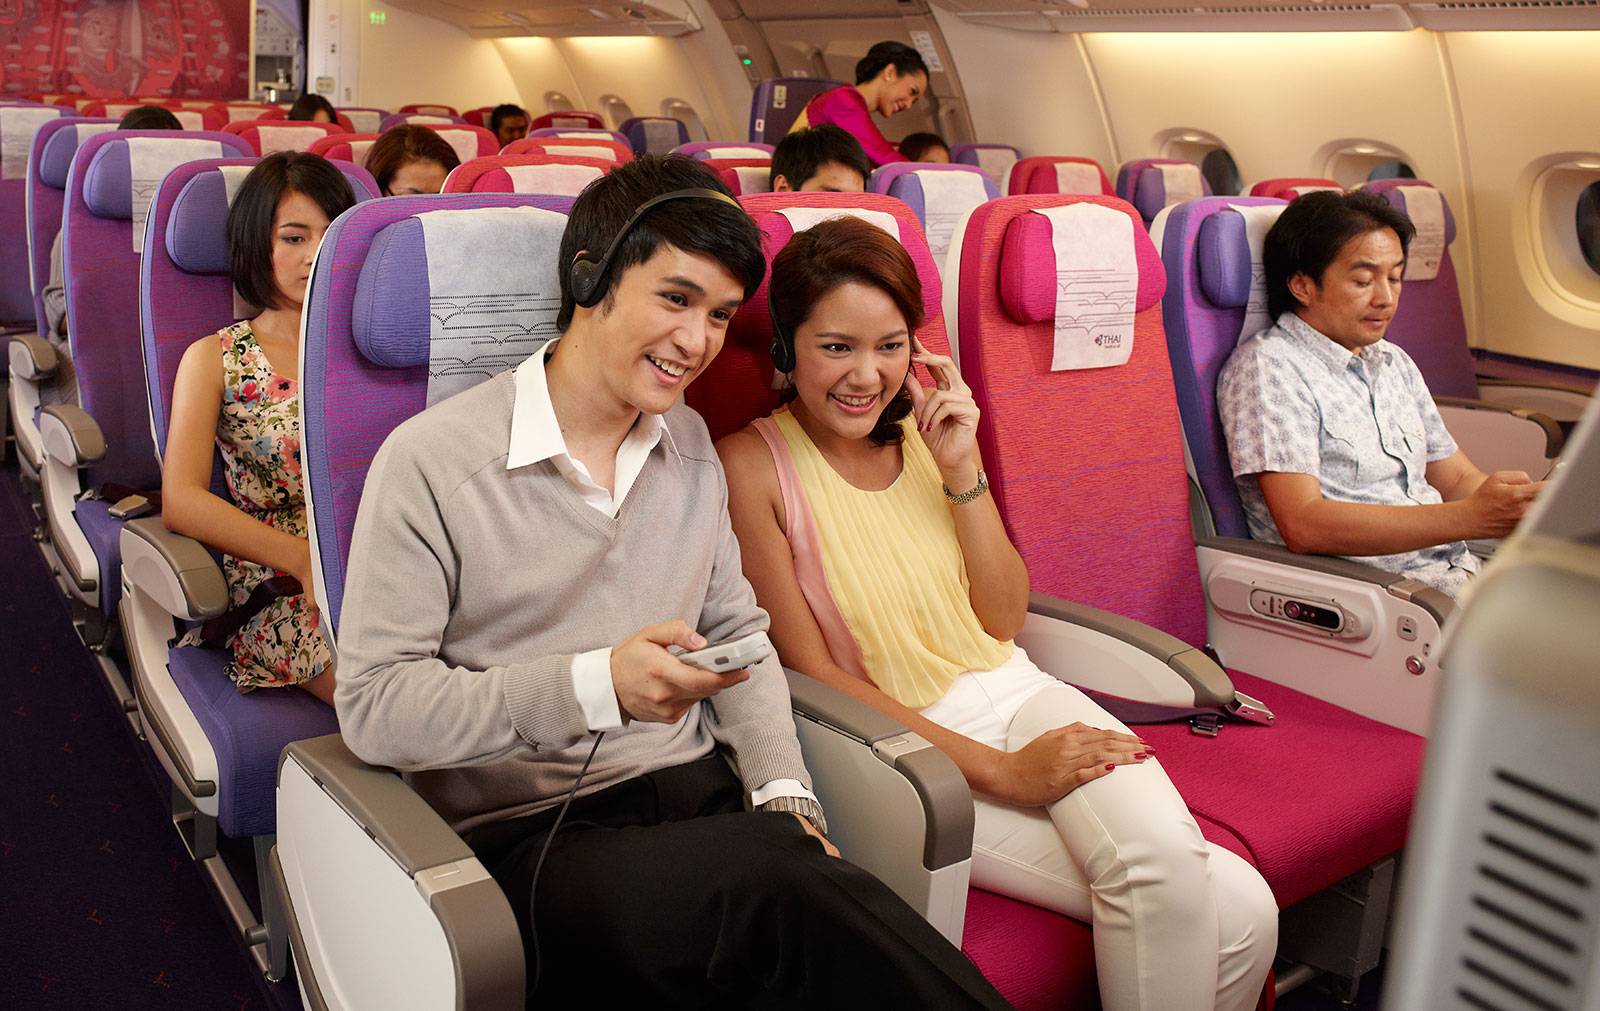 Thai airways international (тай эйрвейз интернешнл): описание авиакомпании таиланда, услуги тайских авиалиний и цены, контакты